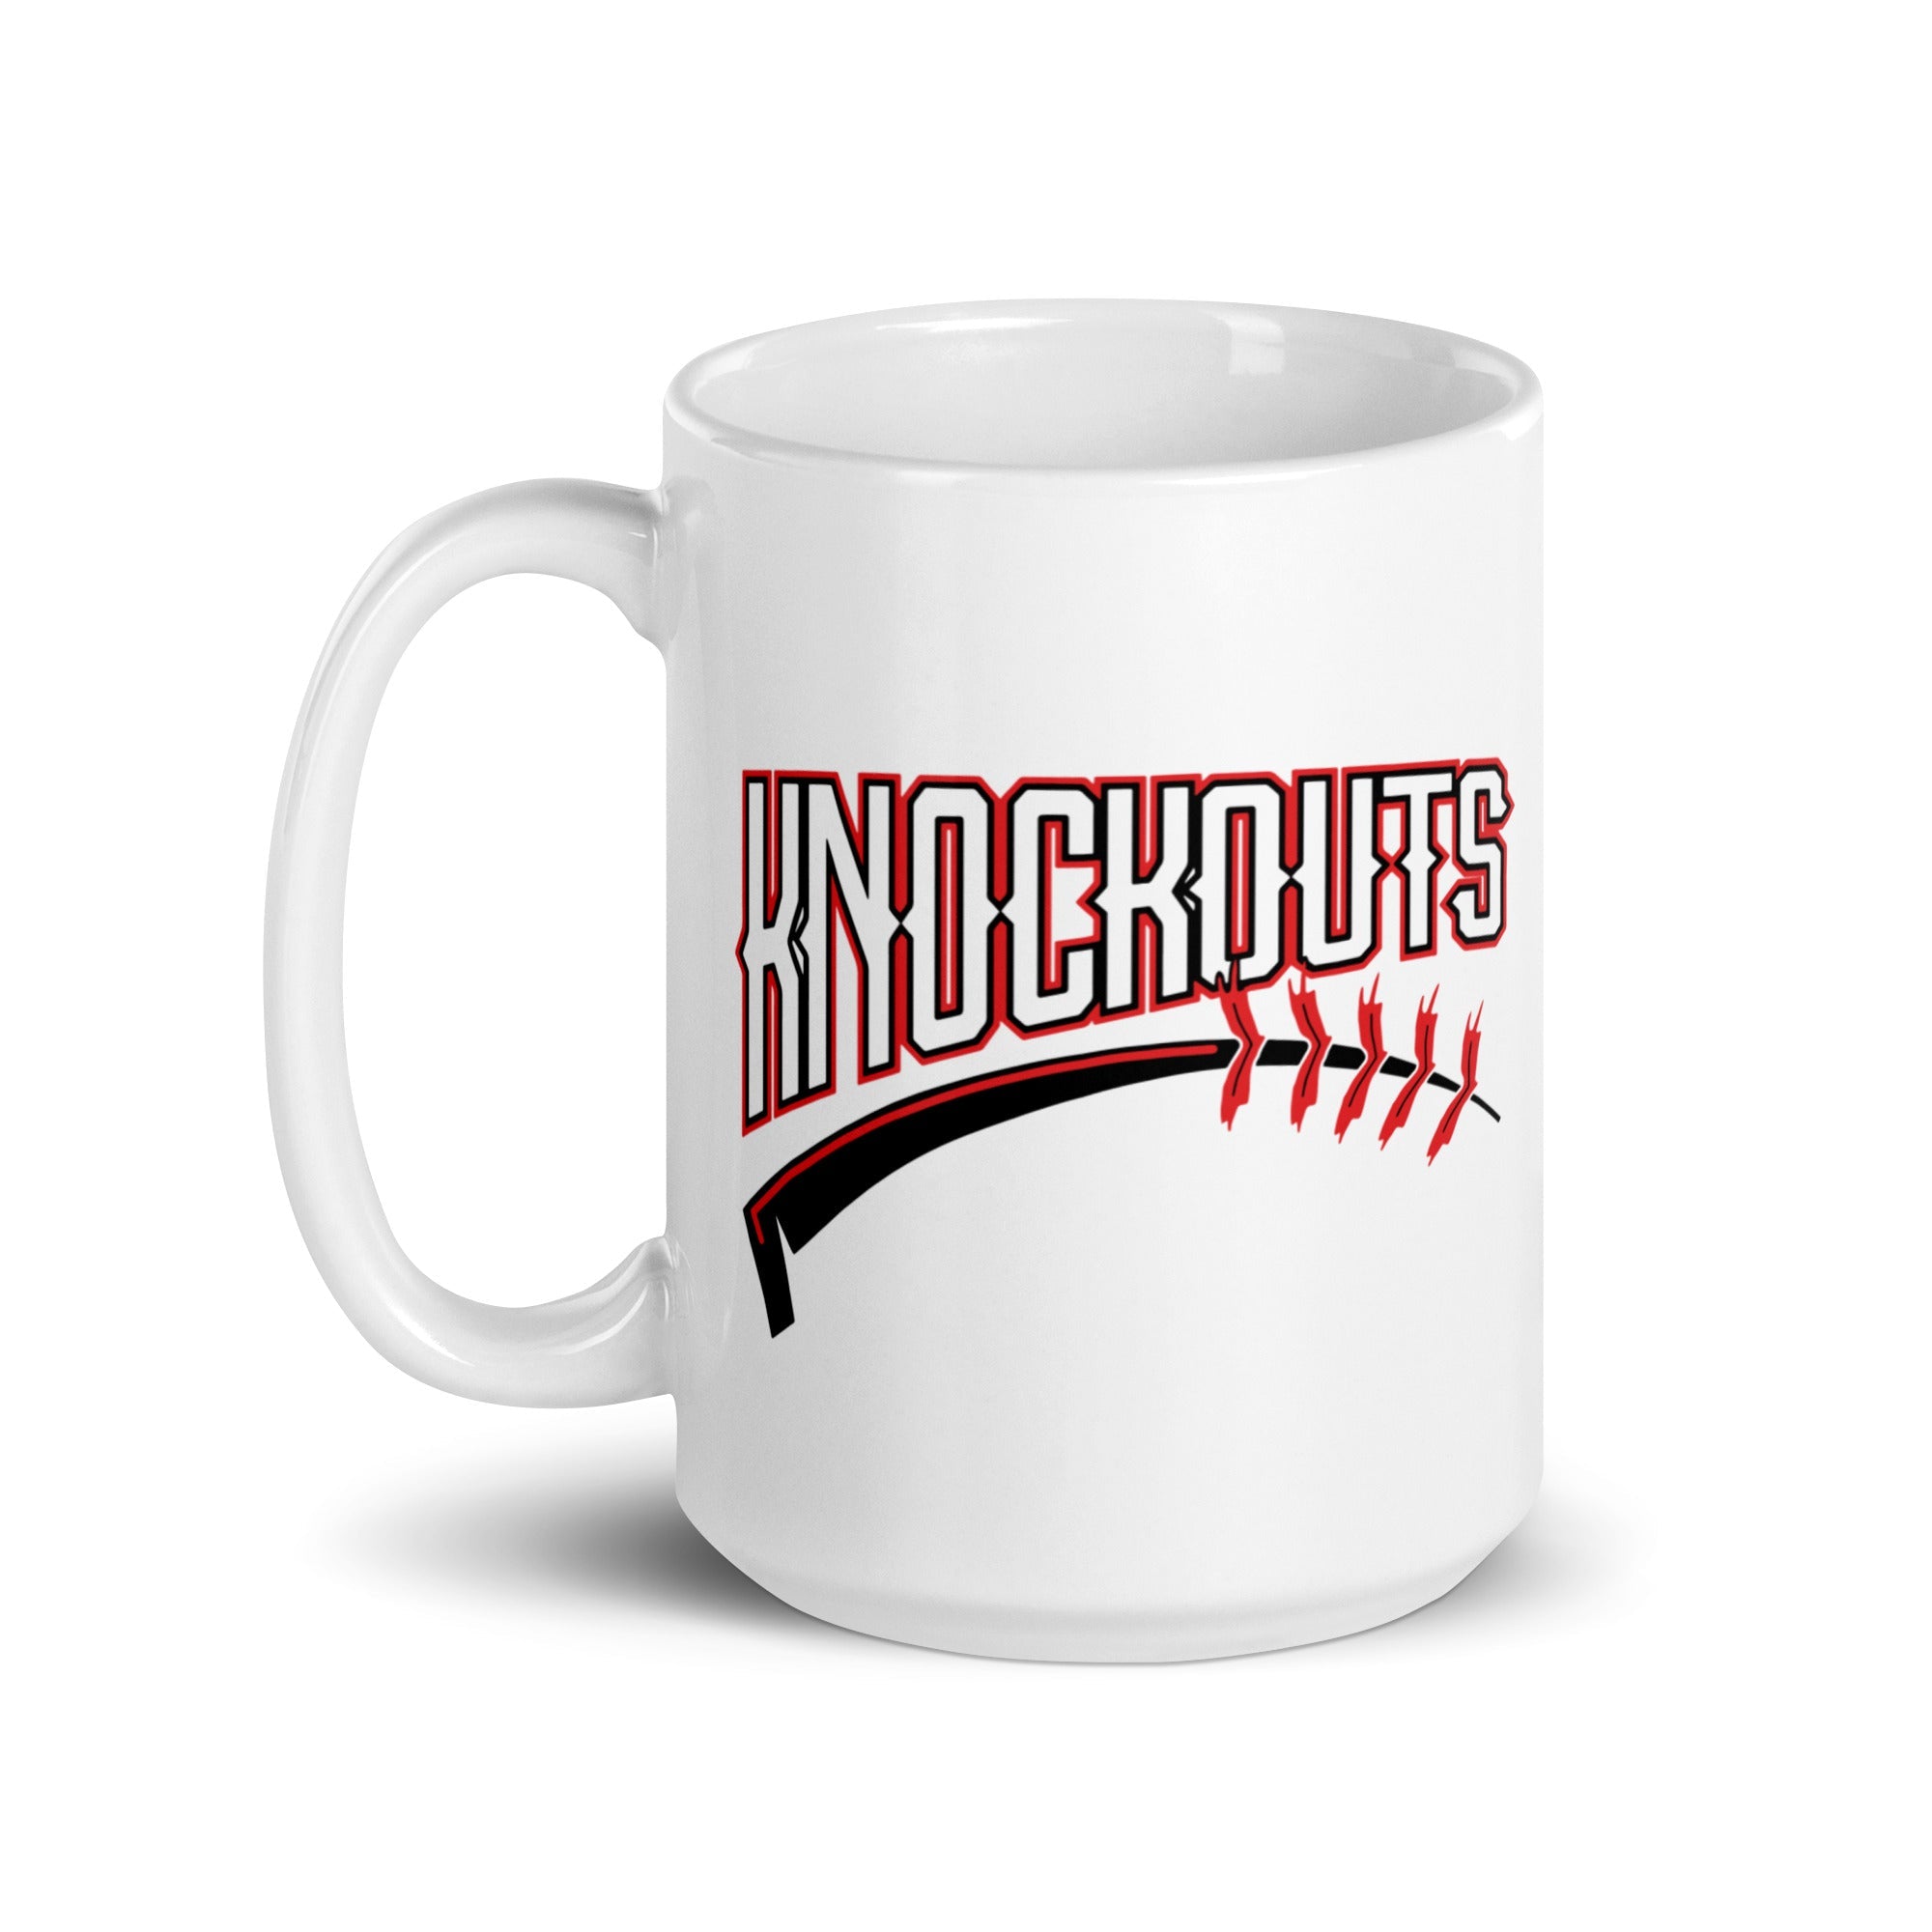 Knockouts White glossy mug